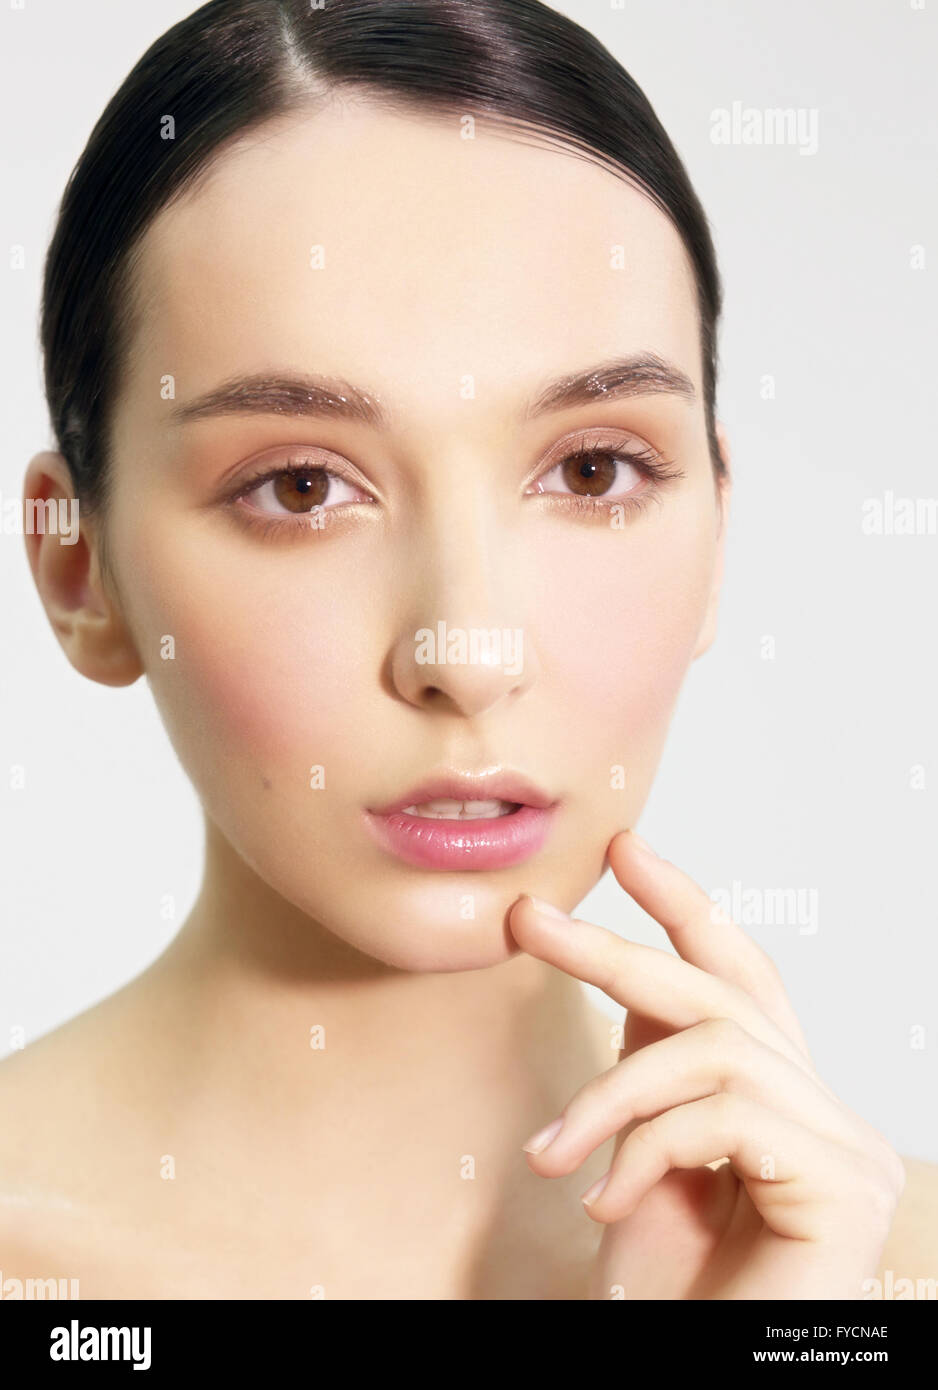 Das Gesicht der Frau mit natürlichen Make-up, close-up. Mode-Trends. Profi-Modell. Stockfoto